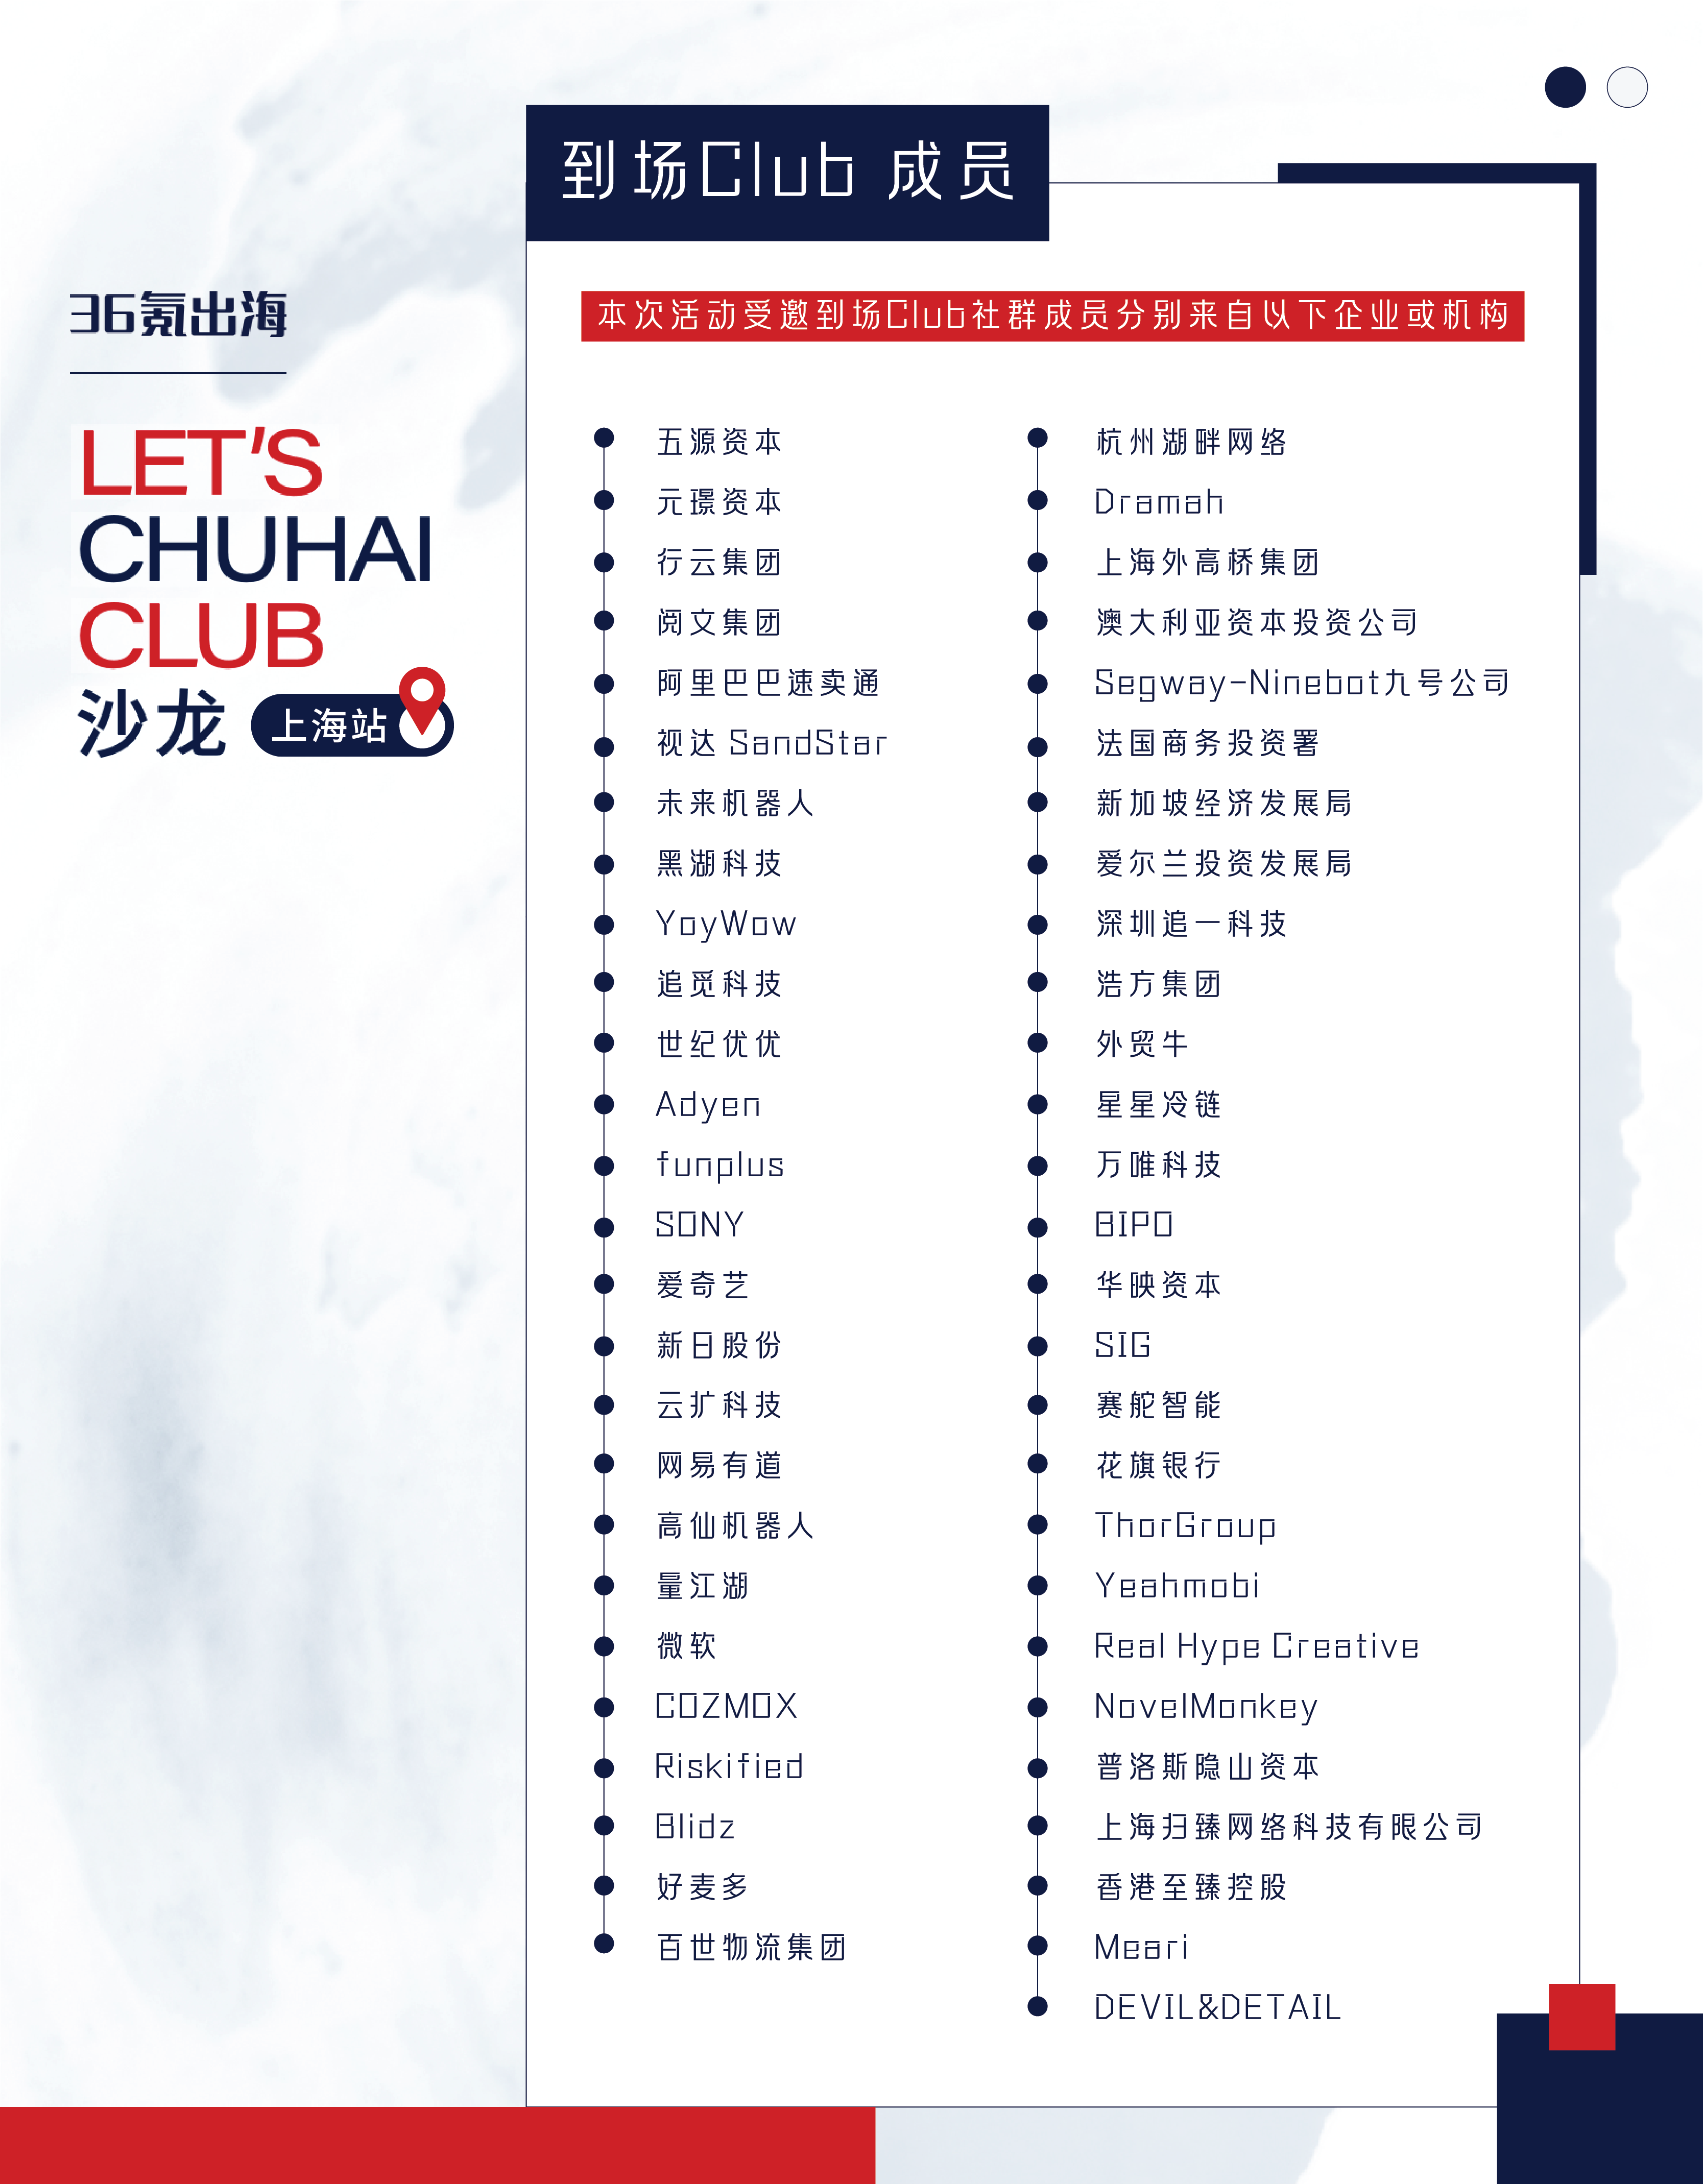 出海活动倒计时 | LET'S CHUHAI CLUB沙龙-上海站即将上线